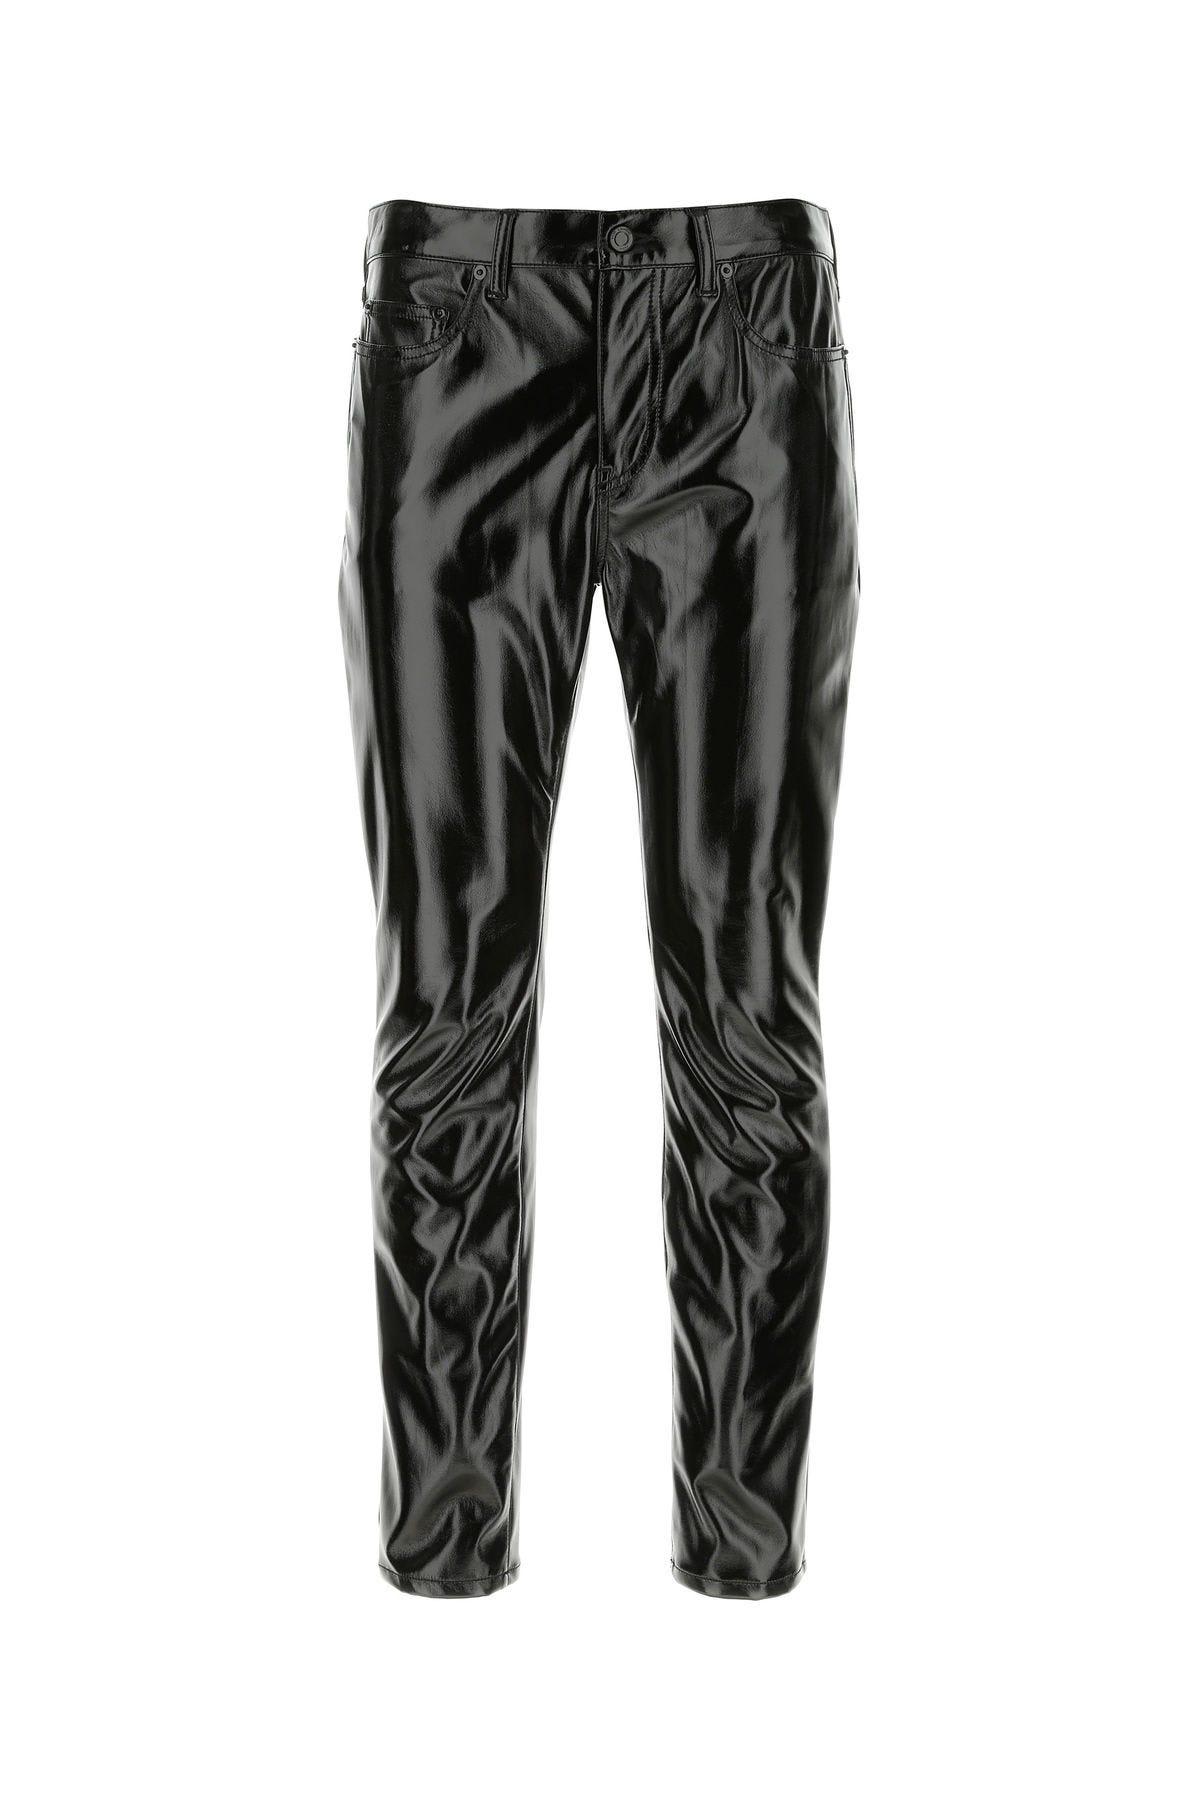 Saint Laurent Black Synthetic Leather Pant